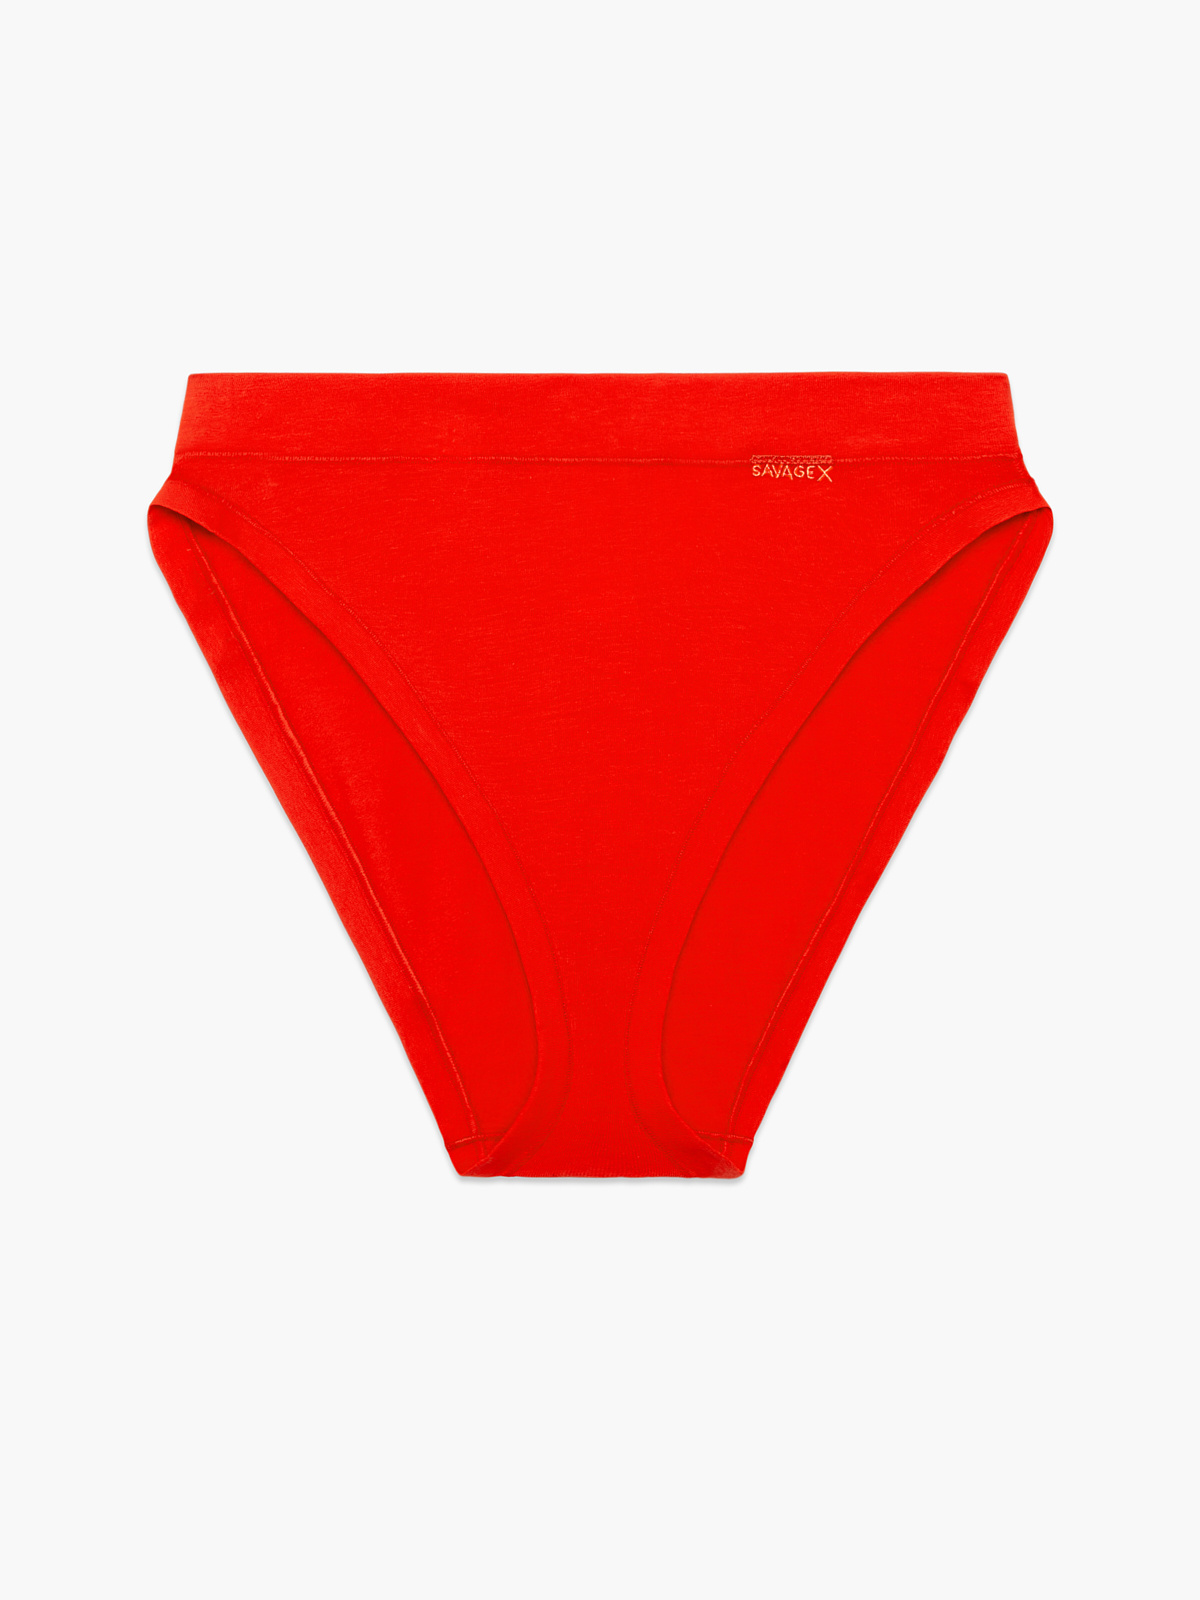 Equipo Underwear Bikini Briefs : Page 15 : Target